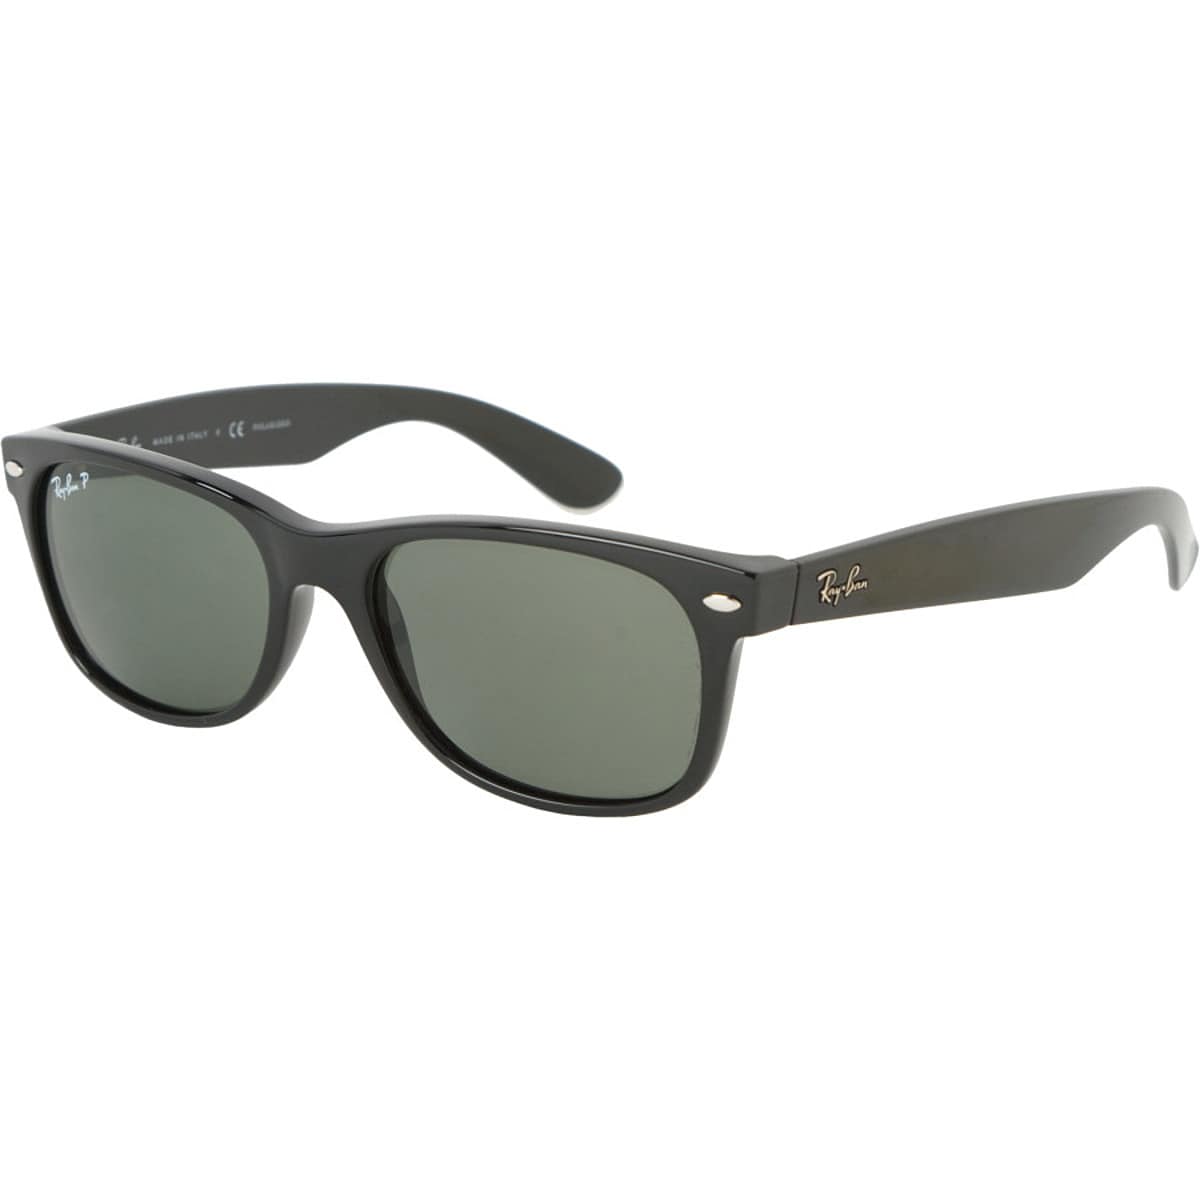 Новые поляризованные солнцезащитные очки wayfarer Ray-Ban, цвет black/crystal natural green солнцезащитные очки ray ban 2140 1178 30 wayfarer